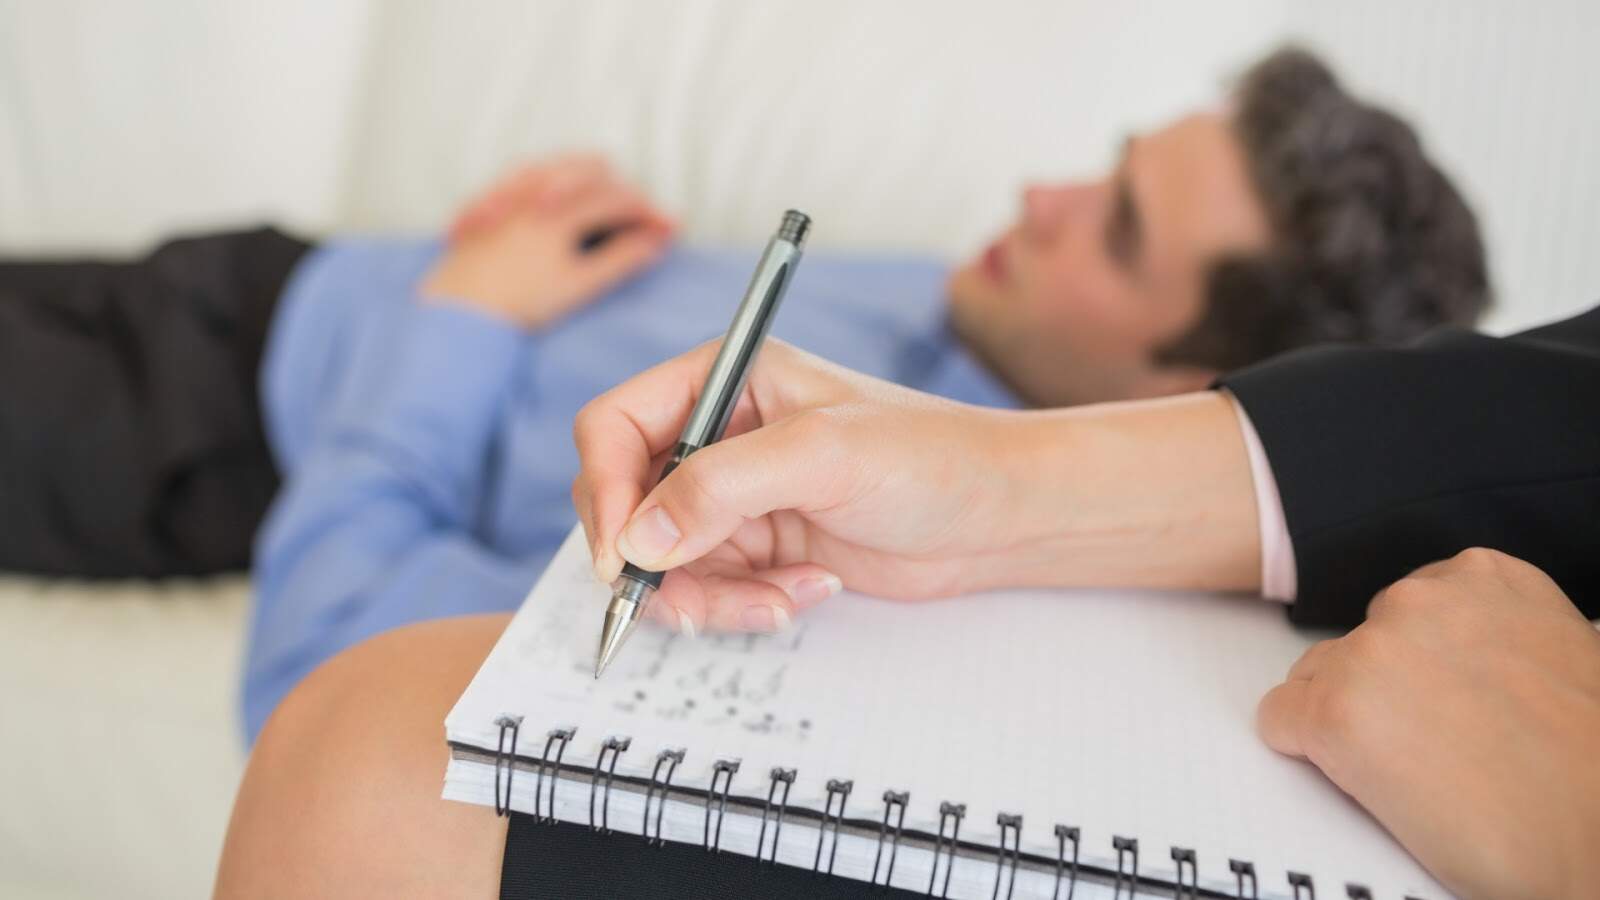 Esgotamento no trabalho pode causar depressão, síndrome do pânico e ansiedade